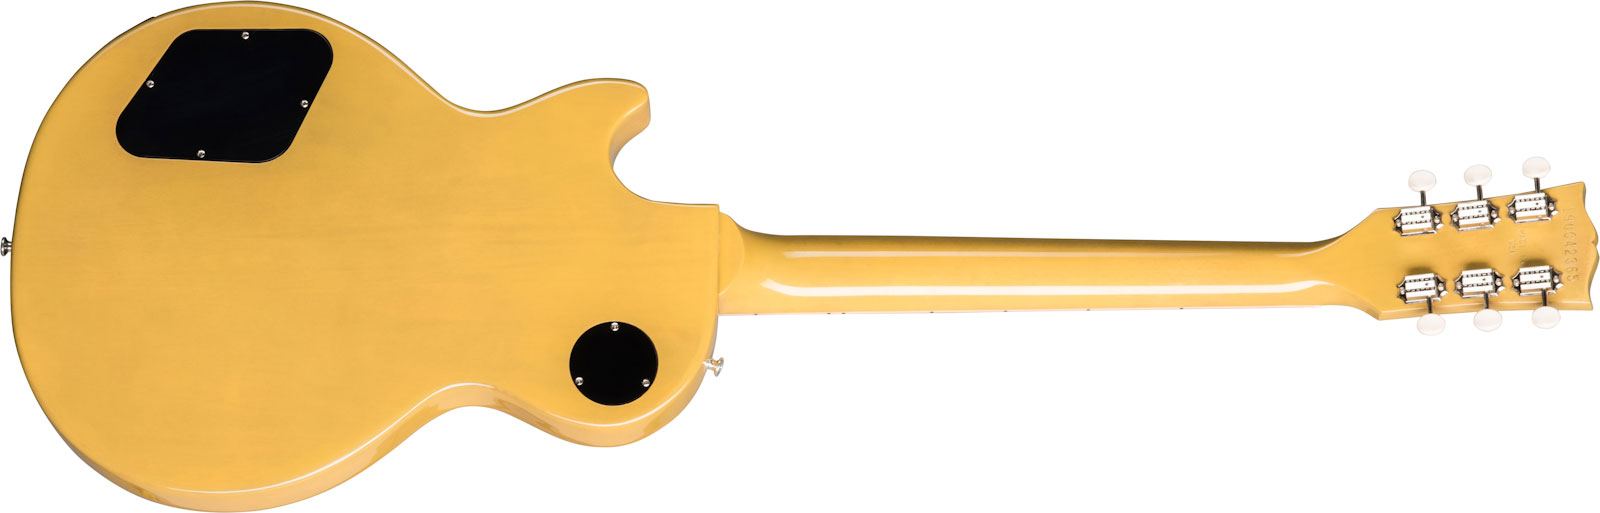 Gibson Les Paul Special Original 2p90 Ht Rw - Tv Yellow - Enkel gesneden elektrische gitaar - Variation 1